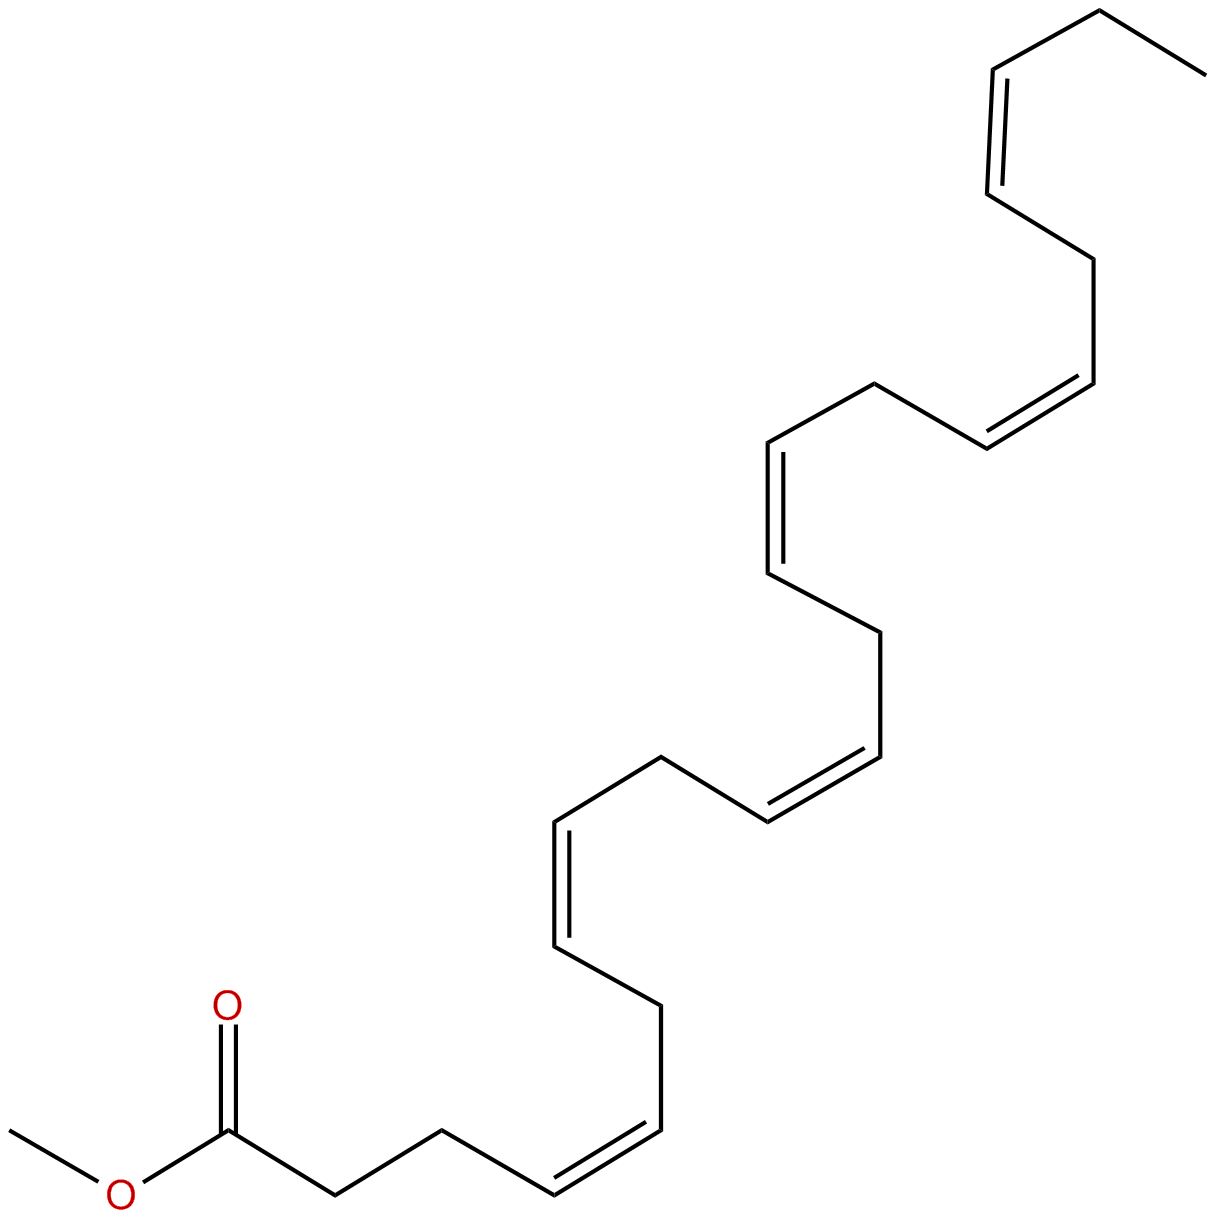 Image of methyl Z,Z,Z,Z,Z,Z 4,7,10,13,16,19-docosahexaeneoate